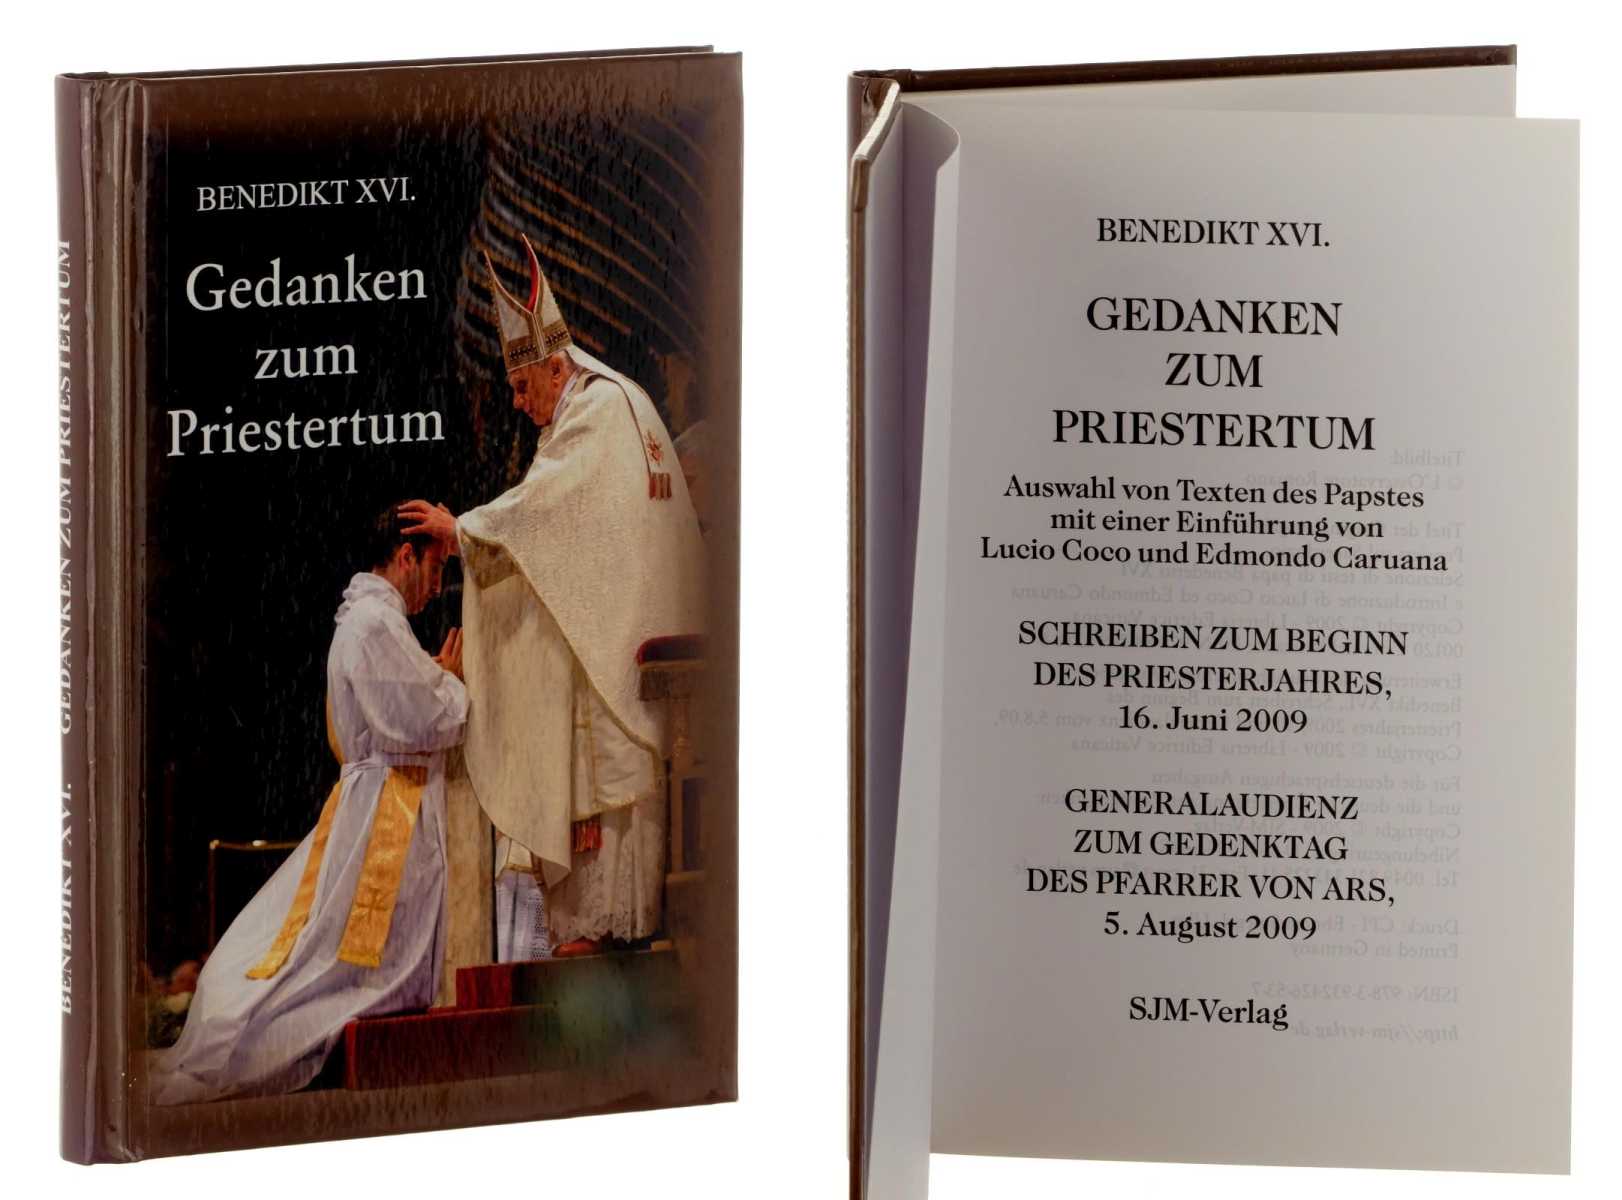   Gedanken zum Priestertum. Auswahl von Texten des Papstes Benedikt XVI. Mit einer Einf. von Lucio Coco und Edmondo Caruana. 